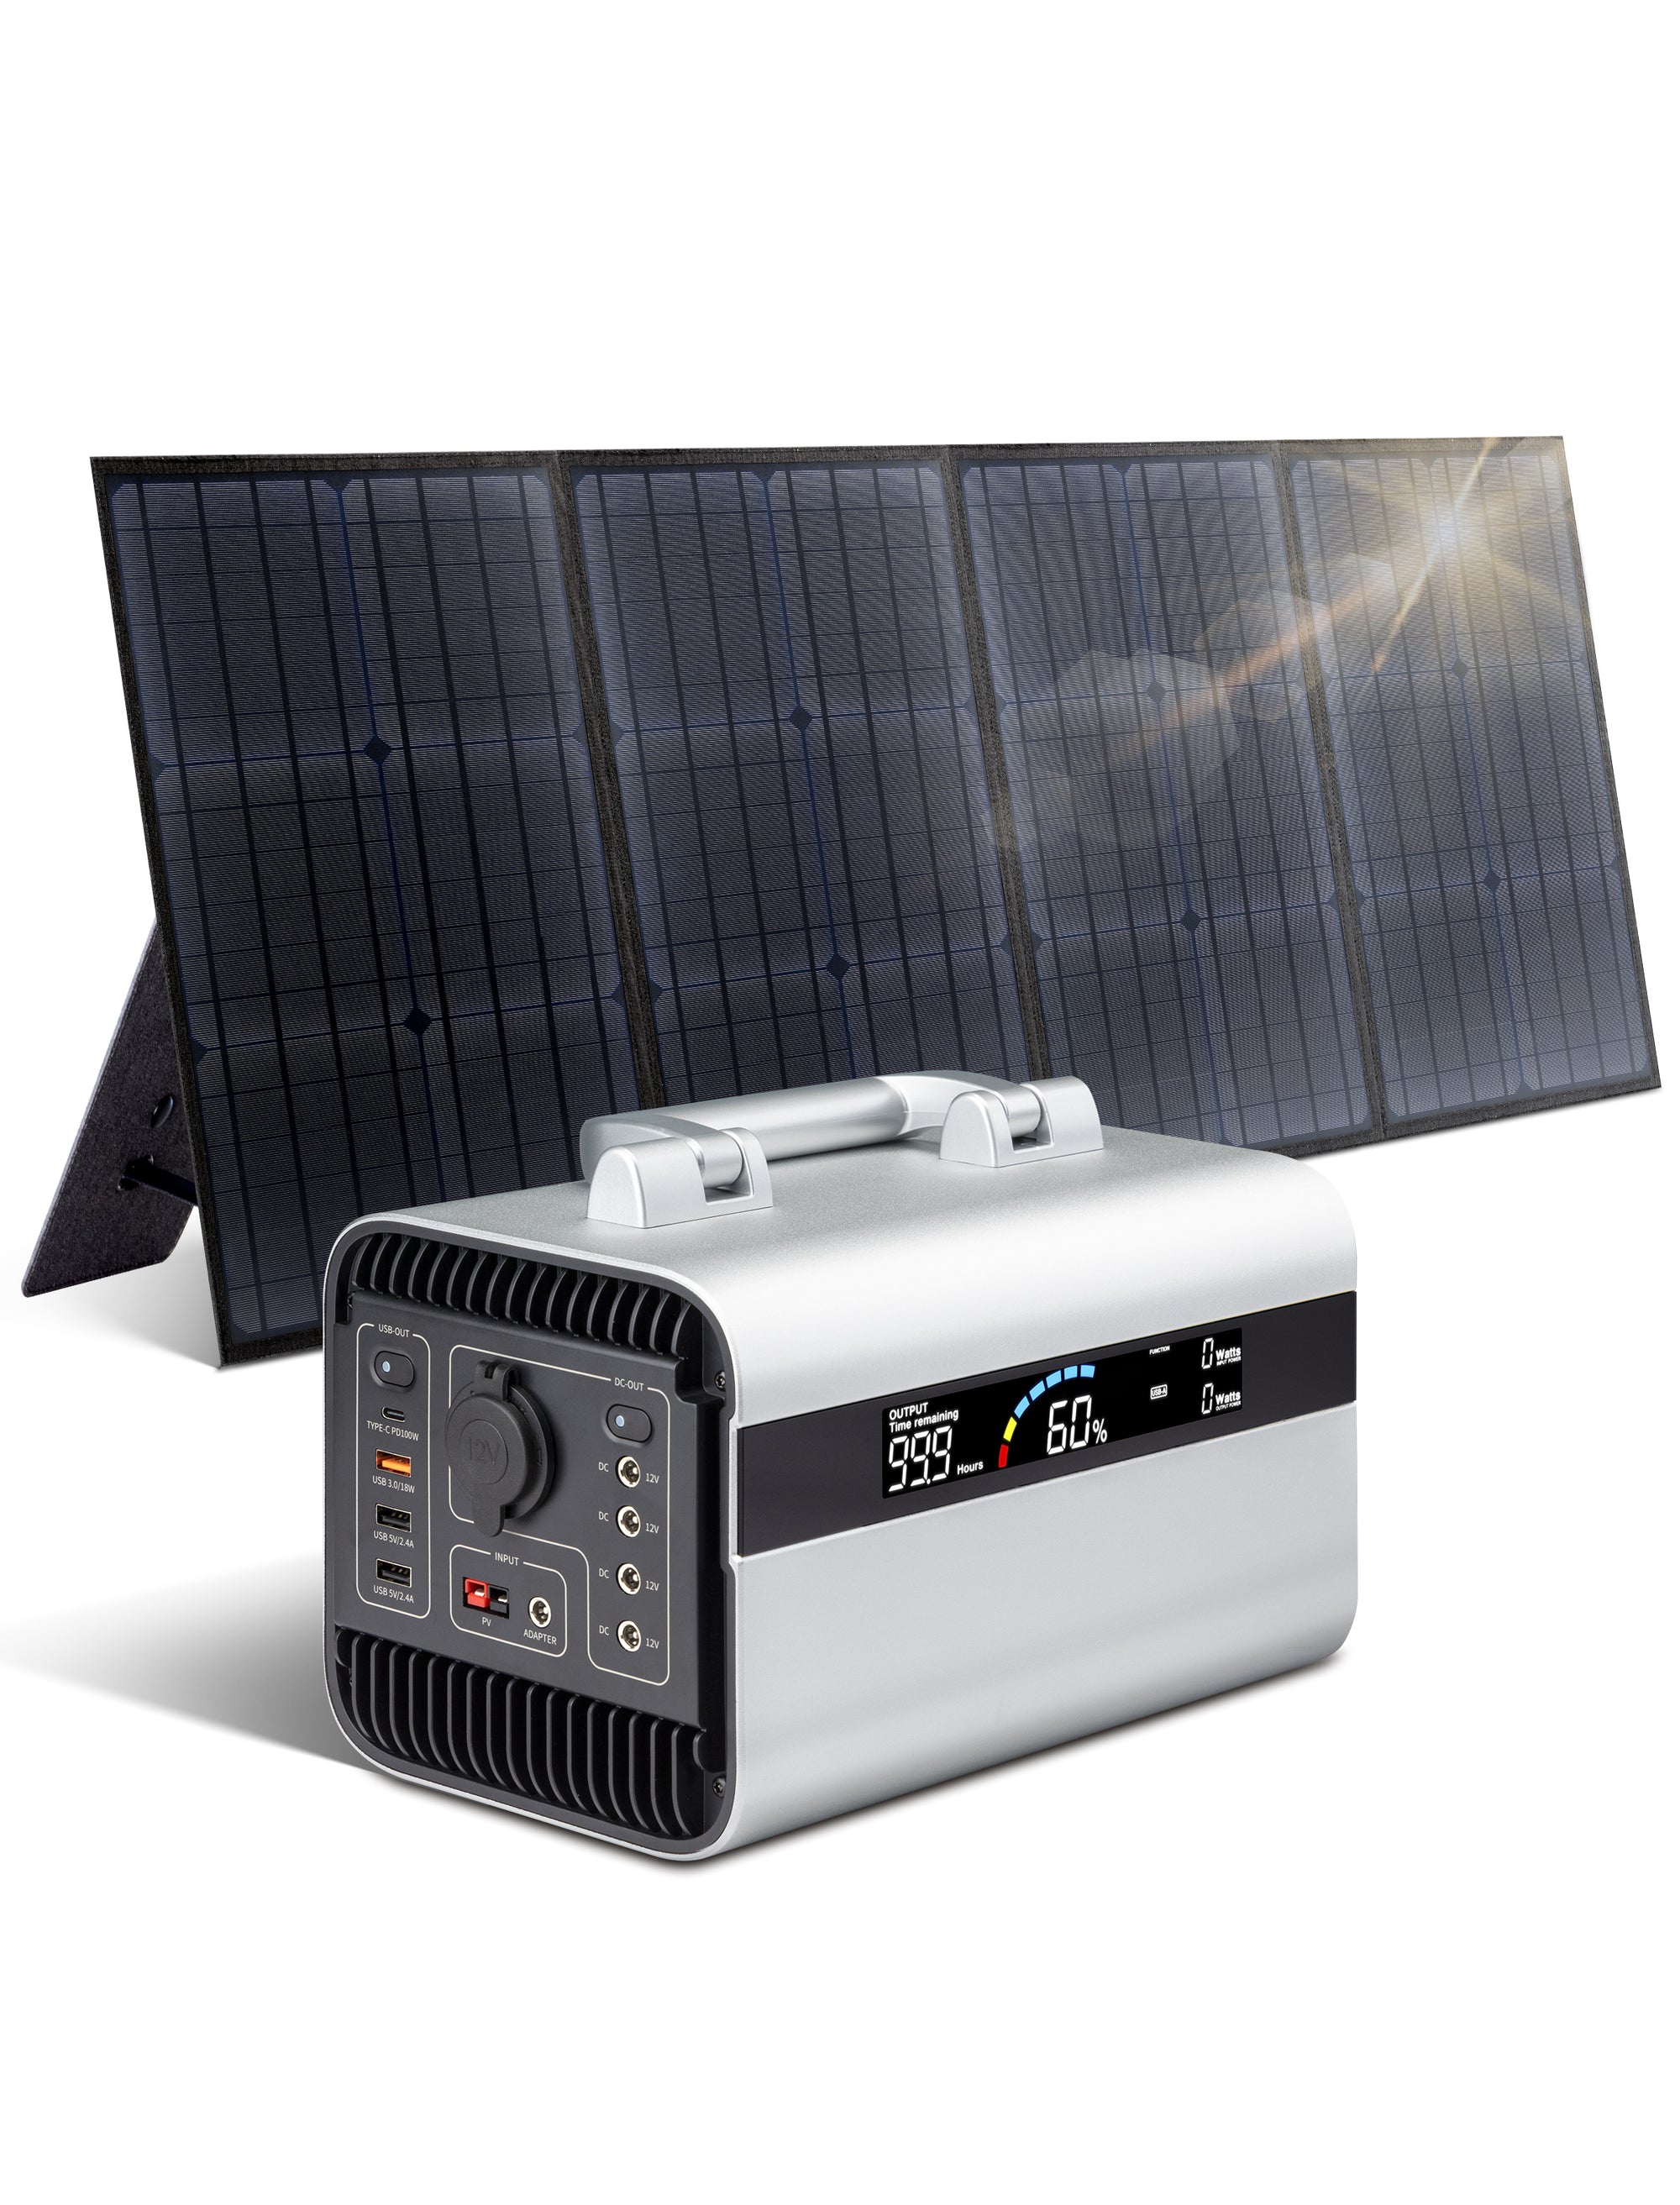 Centrale elettrica portatile da 600 W Generatore solare da 100 W con pannelli solari Centrale elettrica per campeggio all'aperto, viaggi brevi, interruzioni di corrente